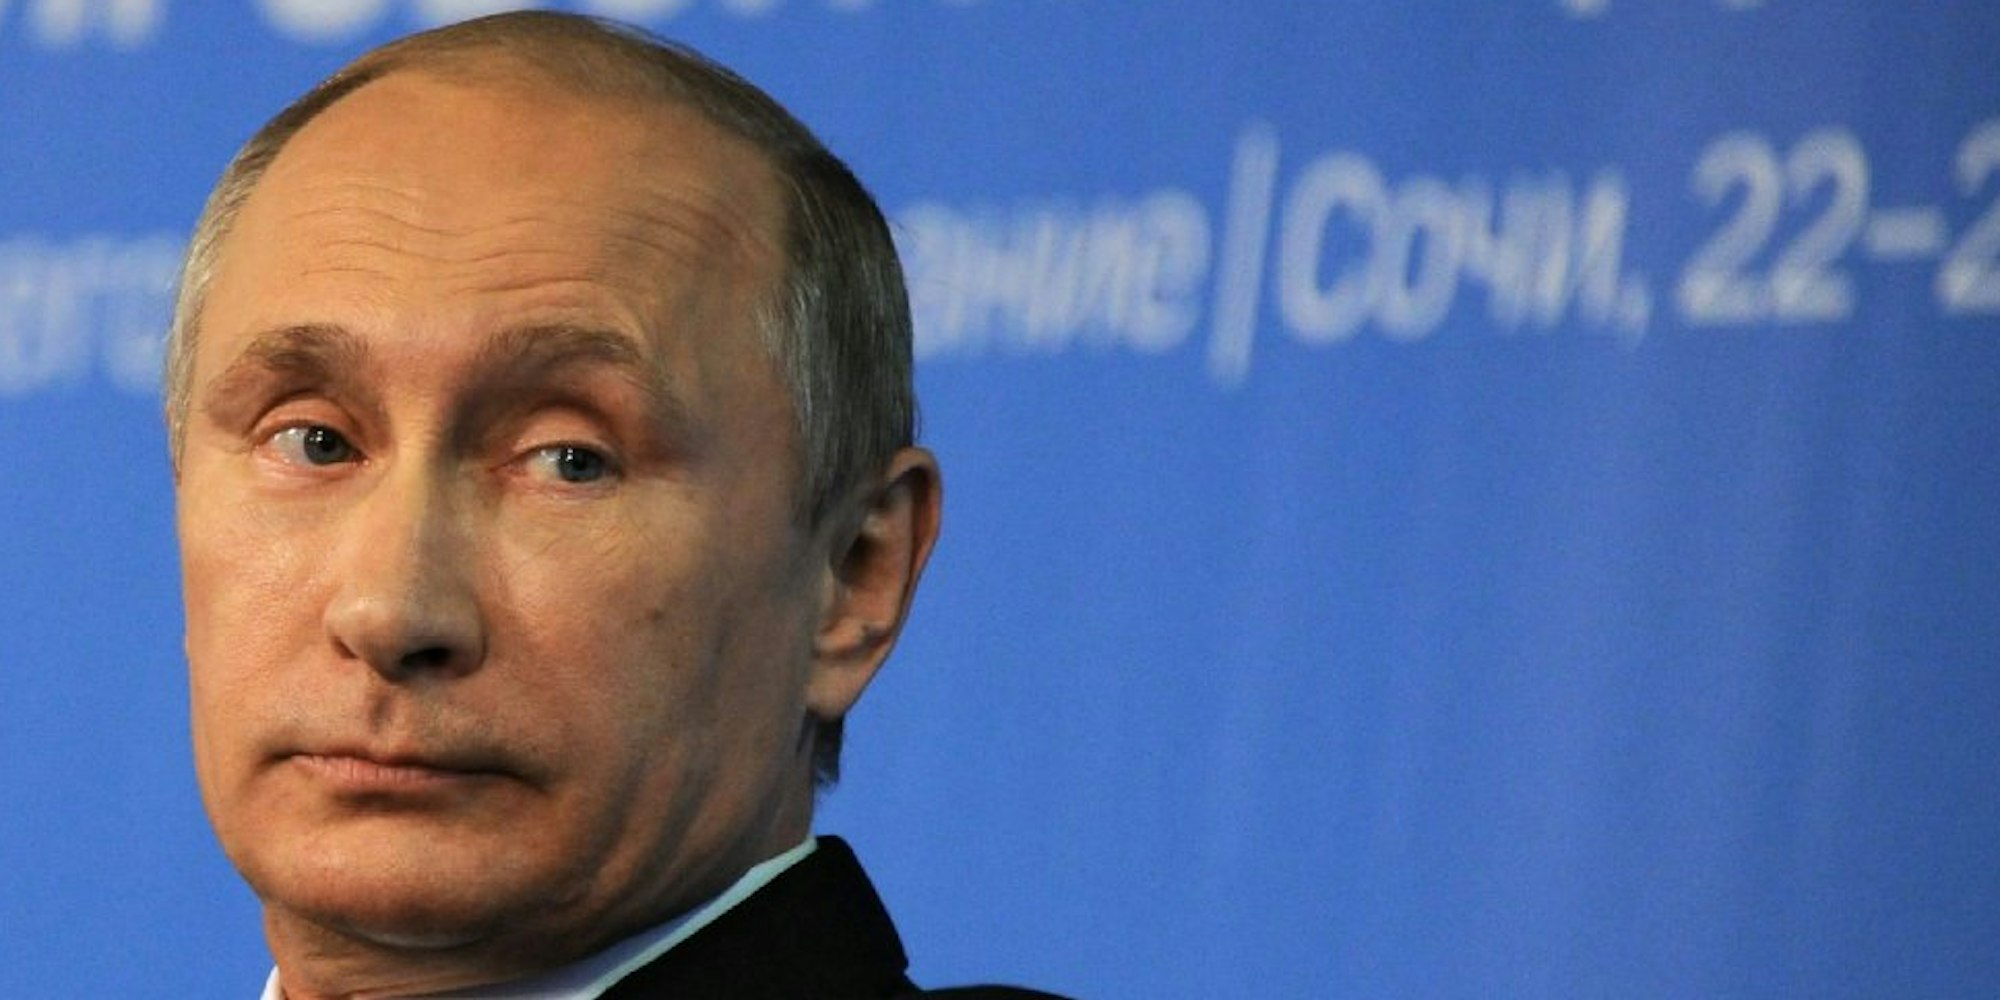 Die Gerüchte um den Gesundheitszustand von Wladimir Putin bereitet vielen Sorgen.